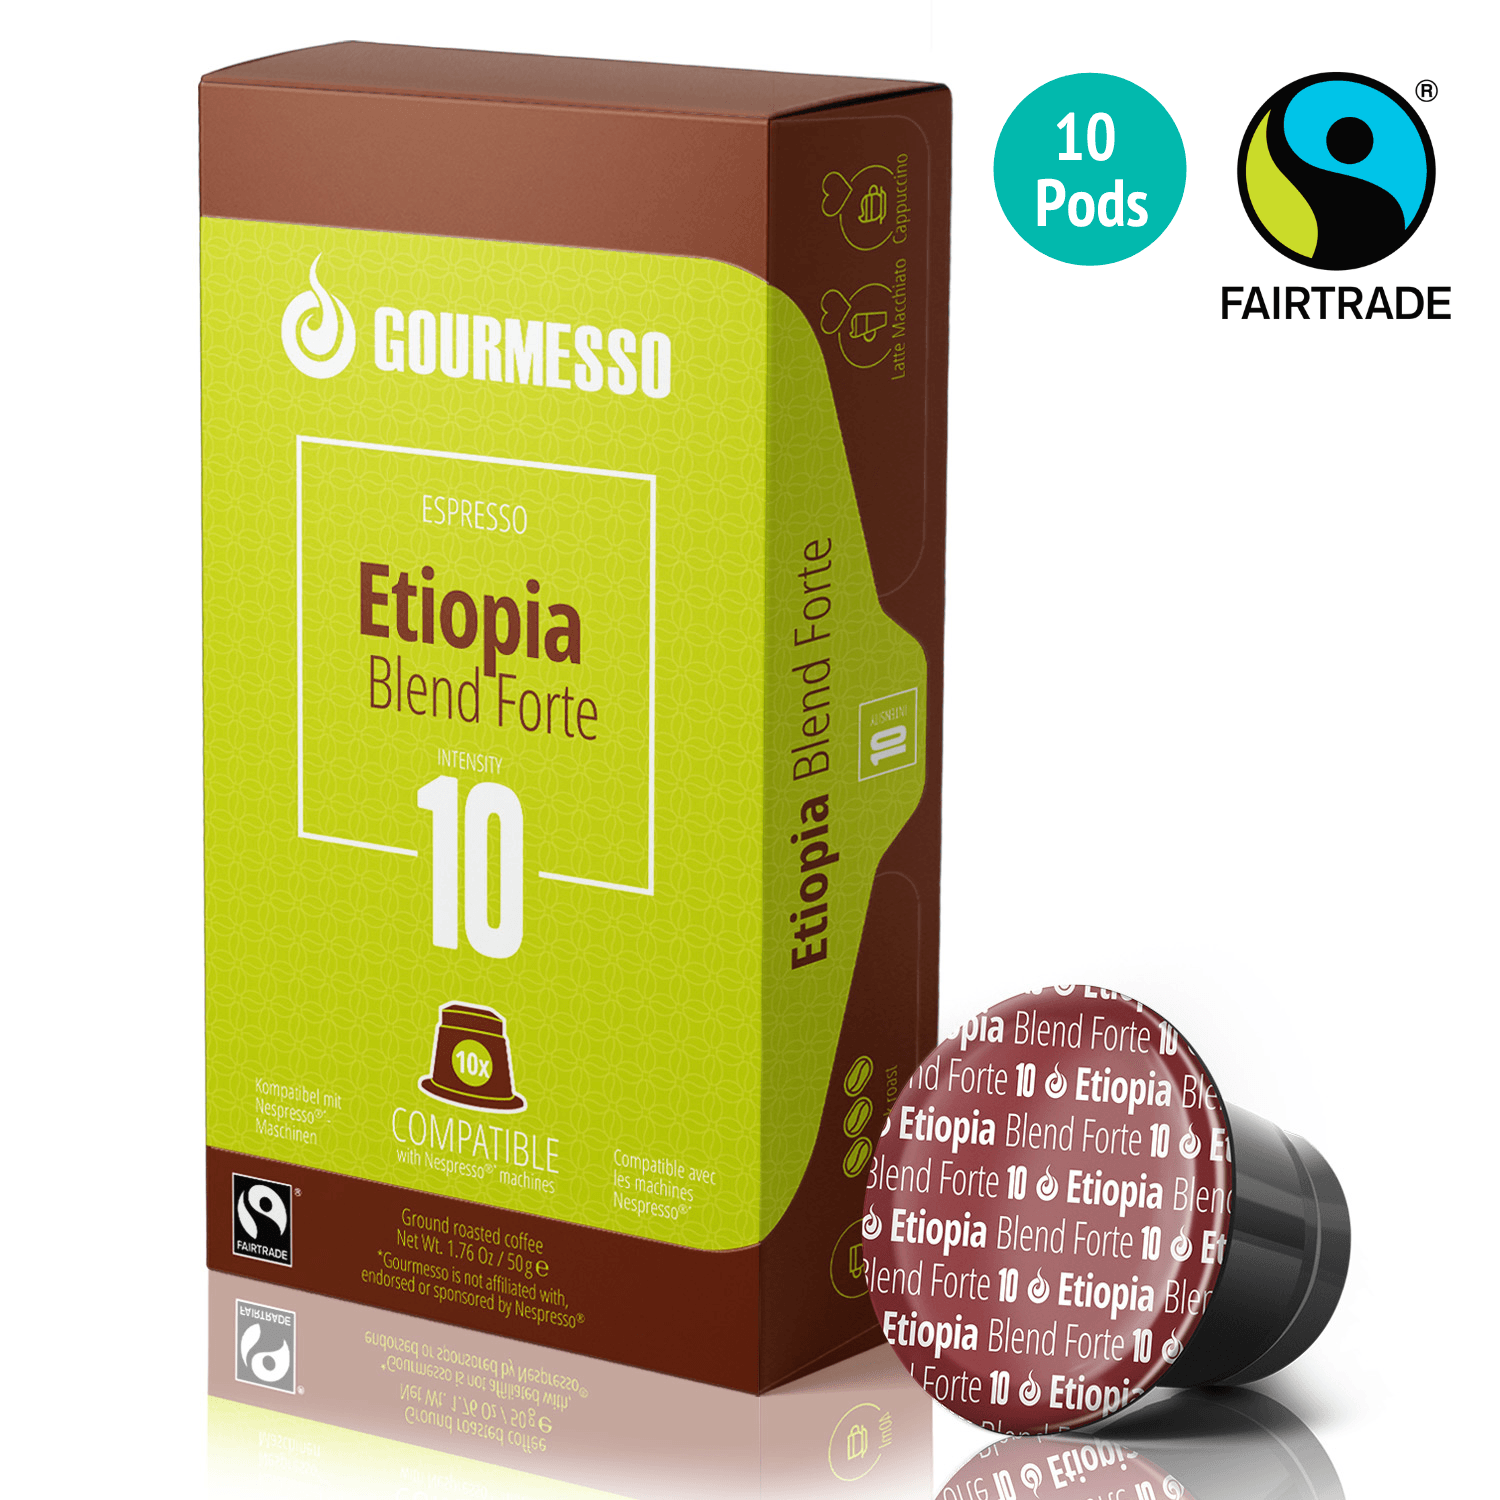 Gourmesso Etiopia Blend Forte - Fairtrade - 10 Pods-Gourmesso